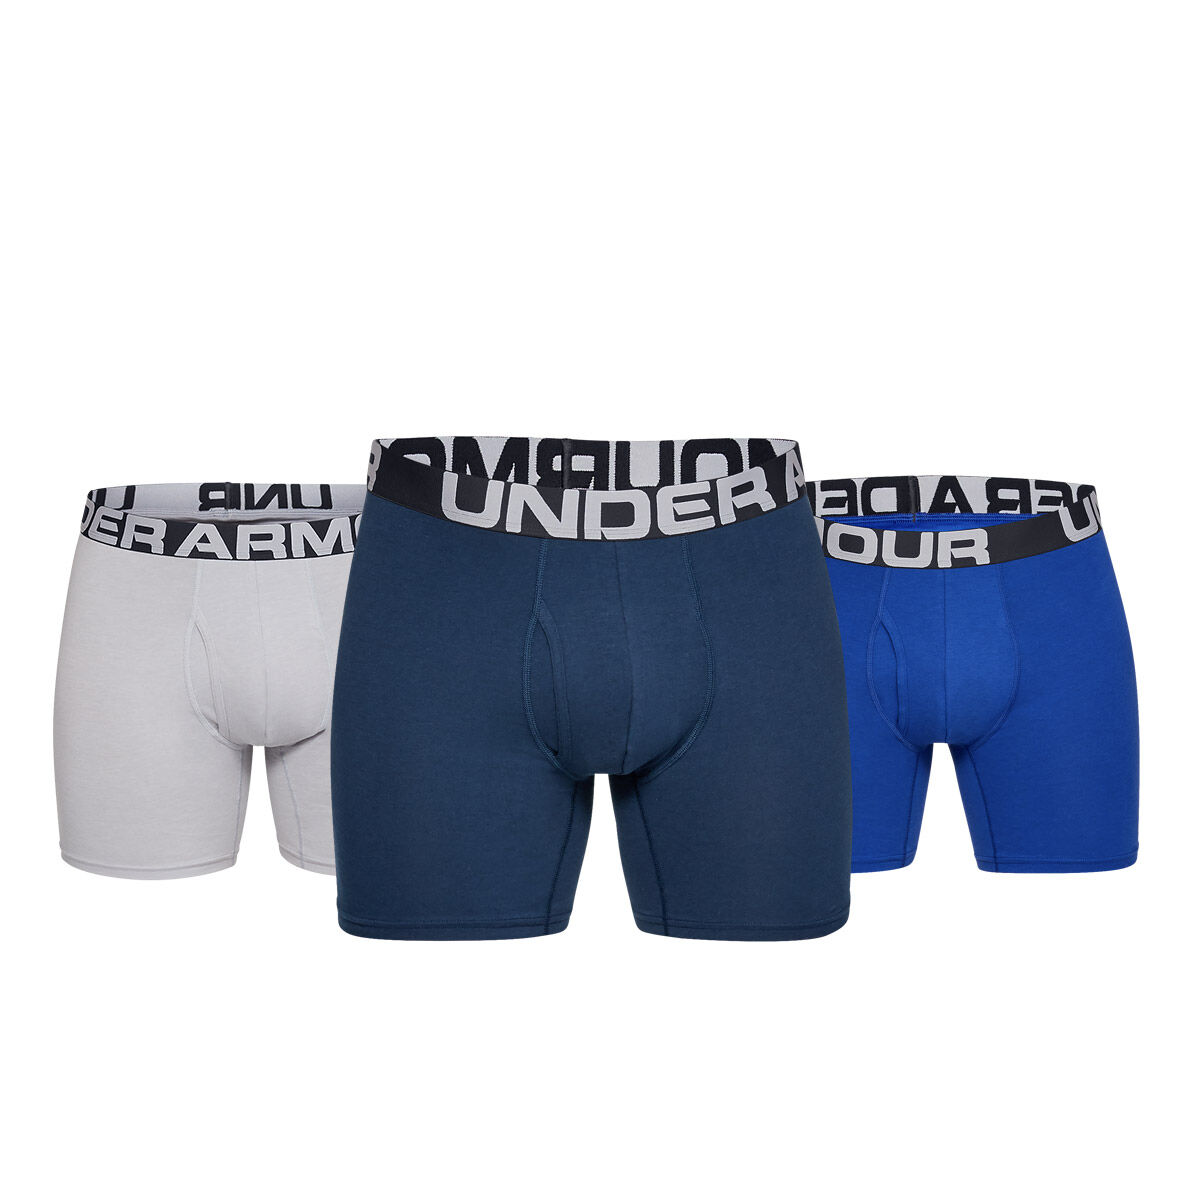 Under Armour men's Boxer shorts | S